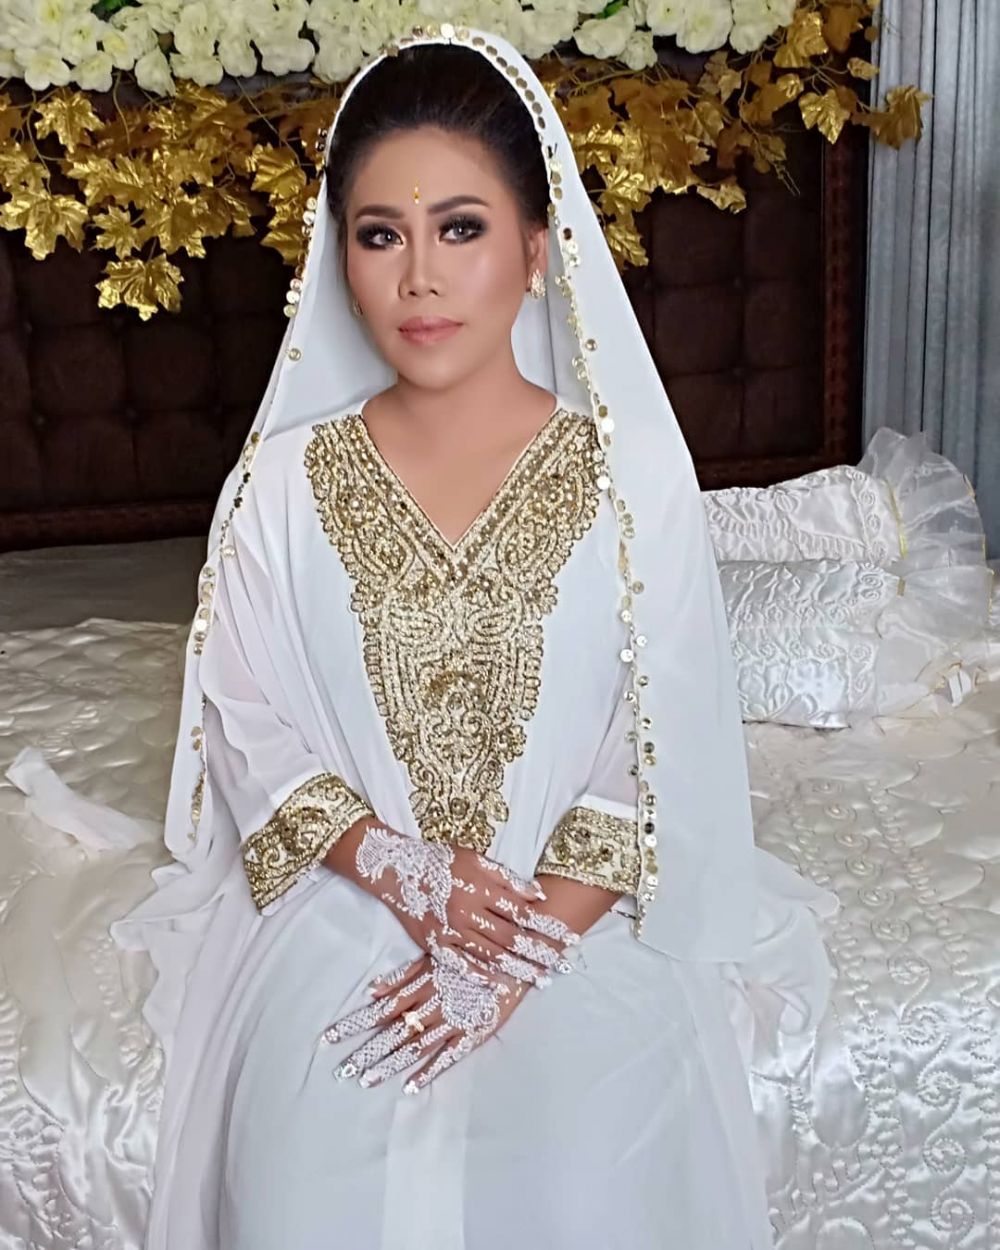 Pesona 10 penyanyi di pengajian jelang nikah, Aurel Hermansyah cantik